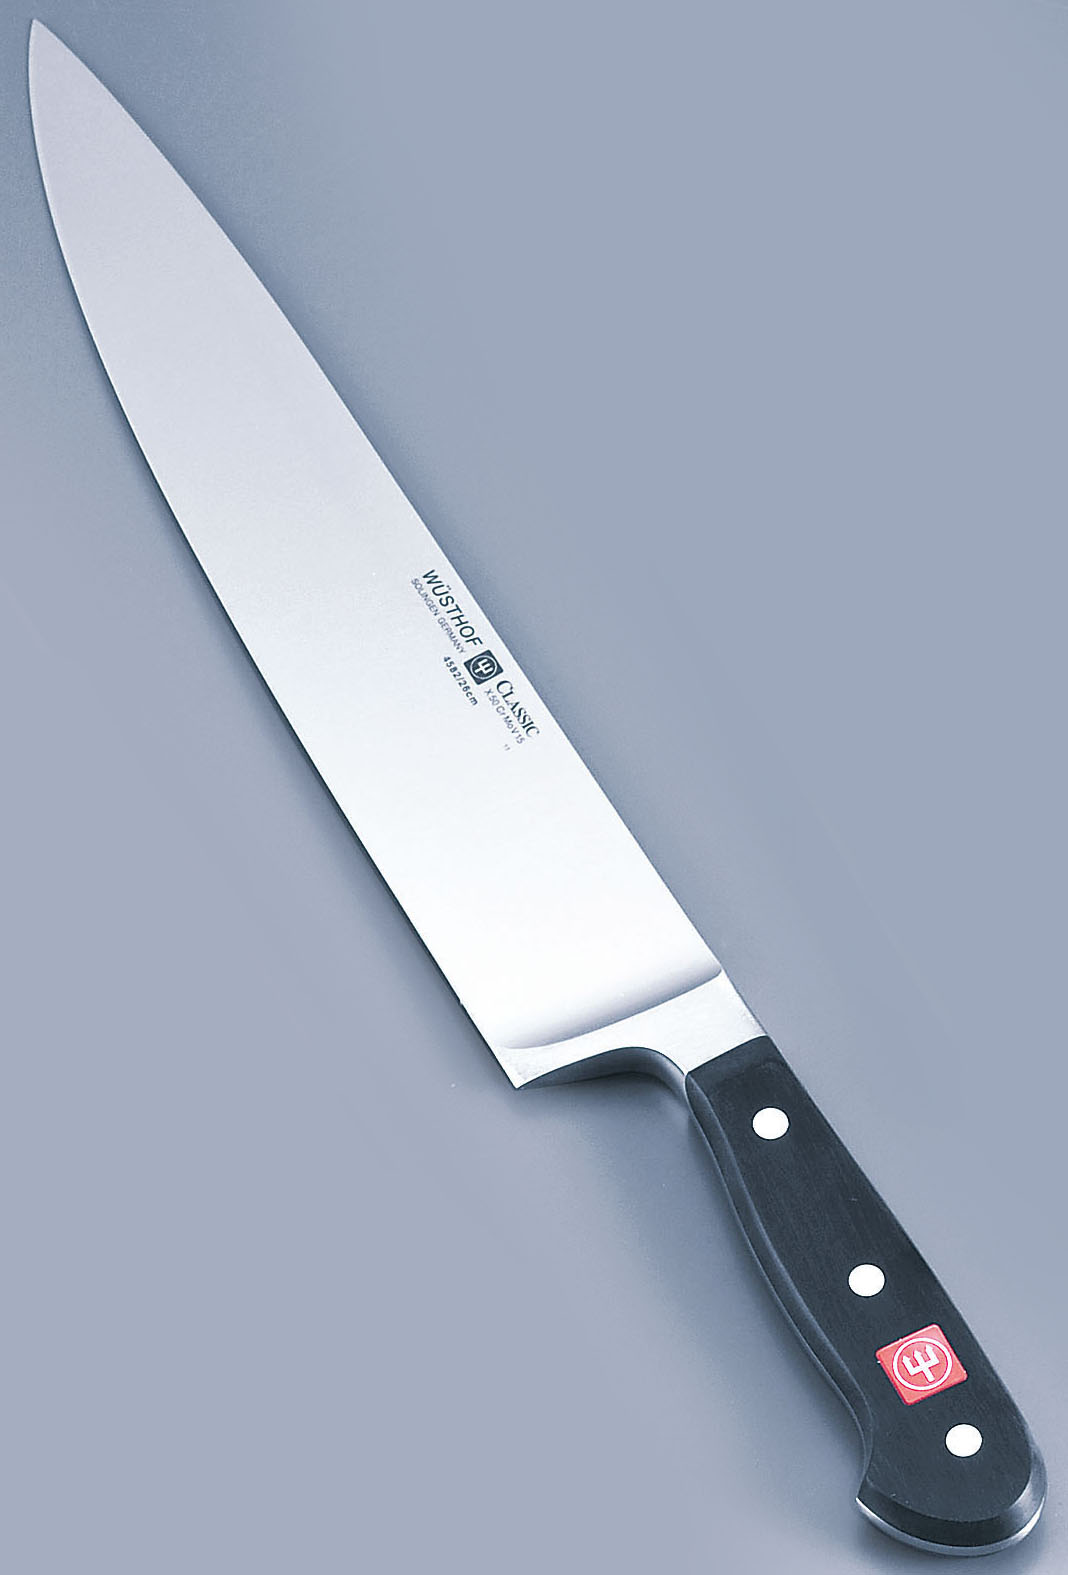 ヴォストホフ クラシック 牛刀 4582 18cm